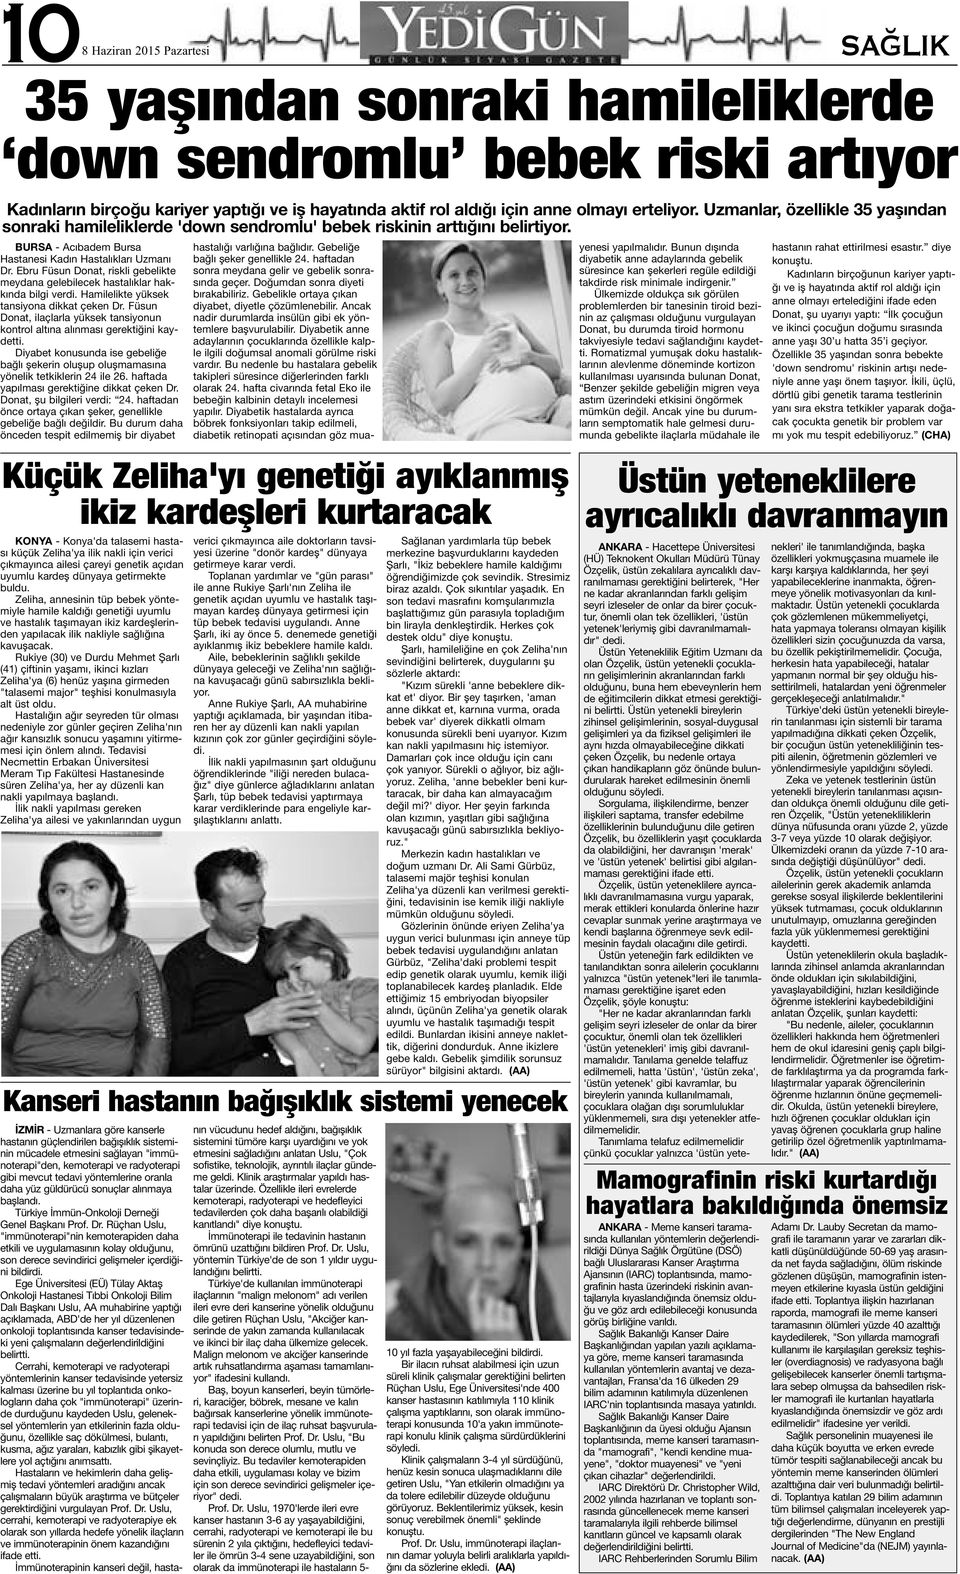 Ebru Füsun Donat, riskli gebelikte meydana gelebilecek hastalıklar hakkında bilgi verdi. Hamilelikte yüksek tansiyona dikkat çeken Dr.